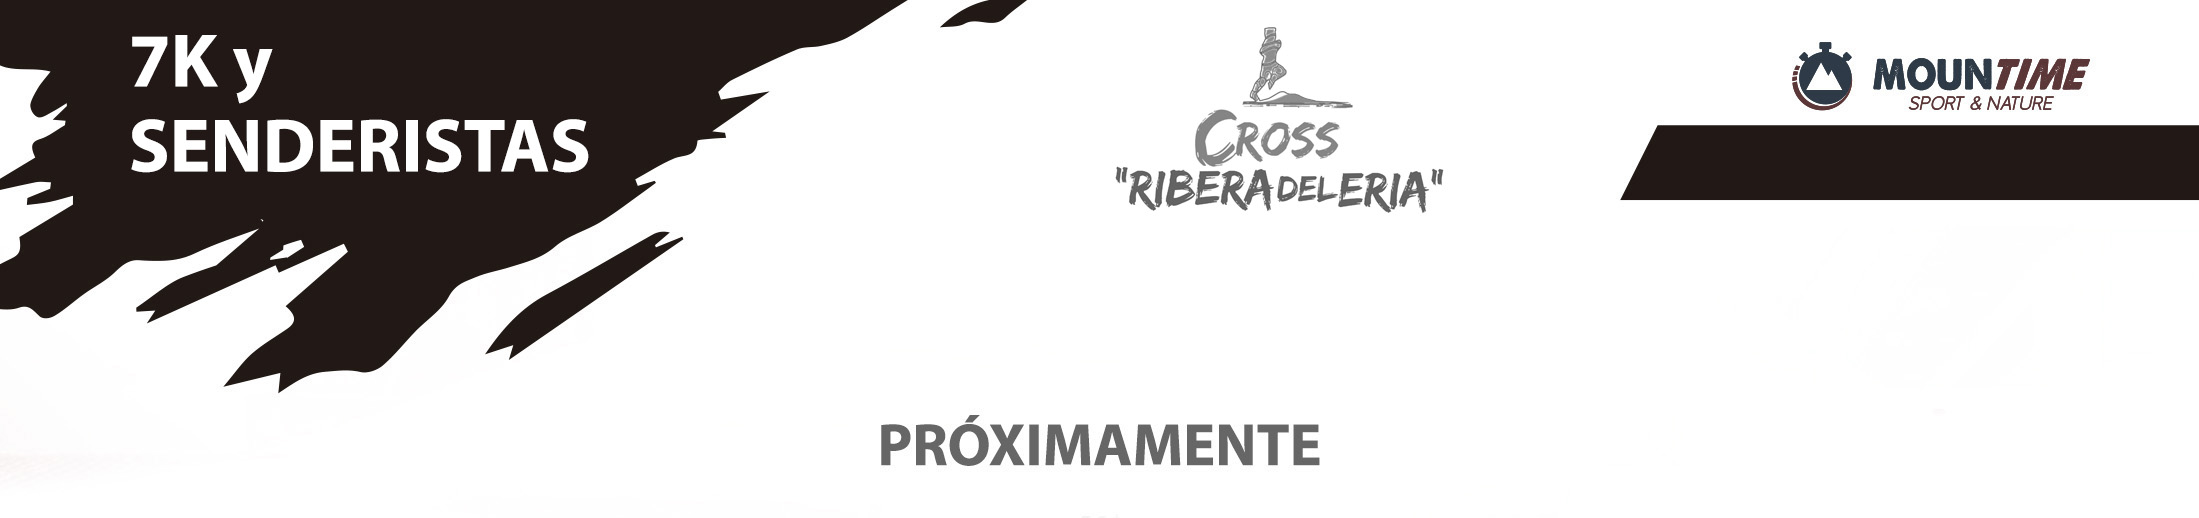 Cross Ribera del Eria - Perfil 7K - Mountim